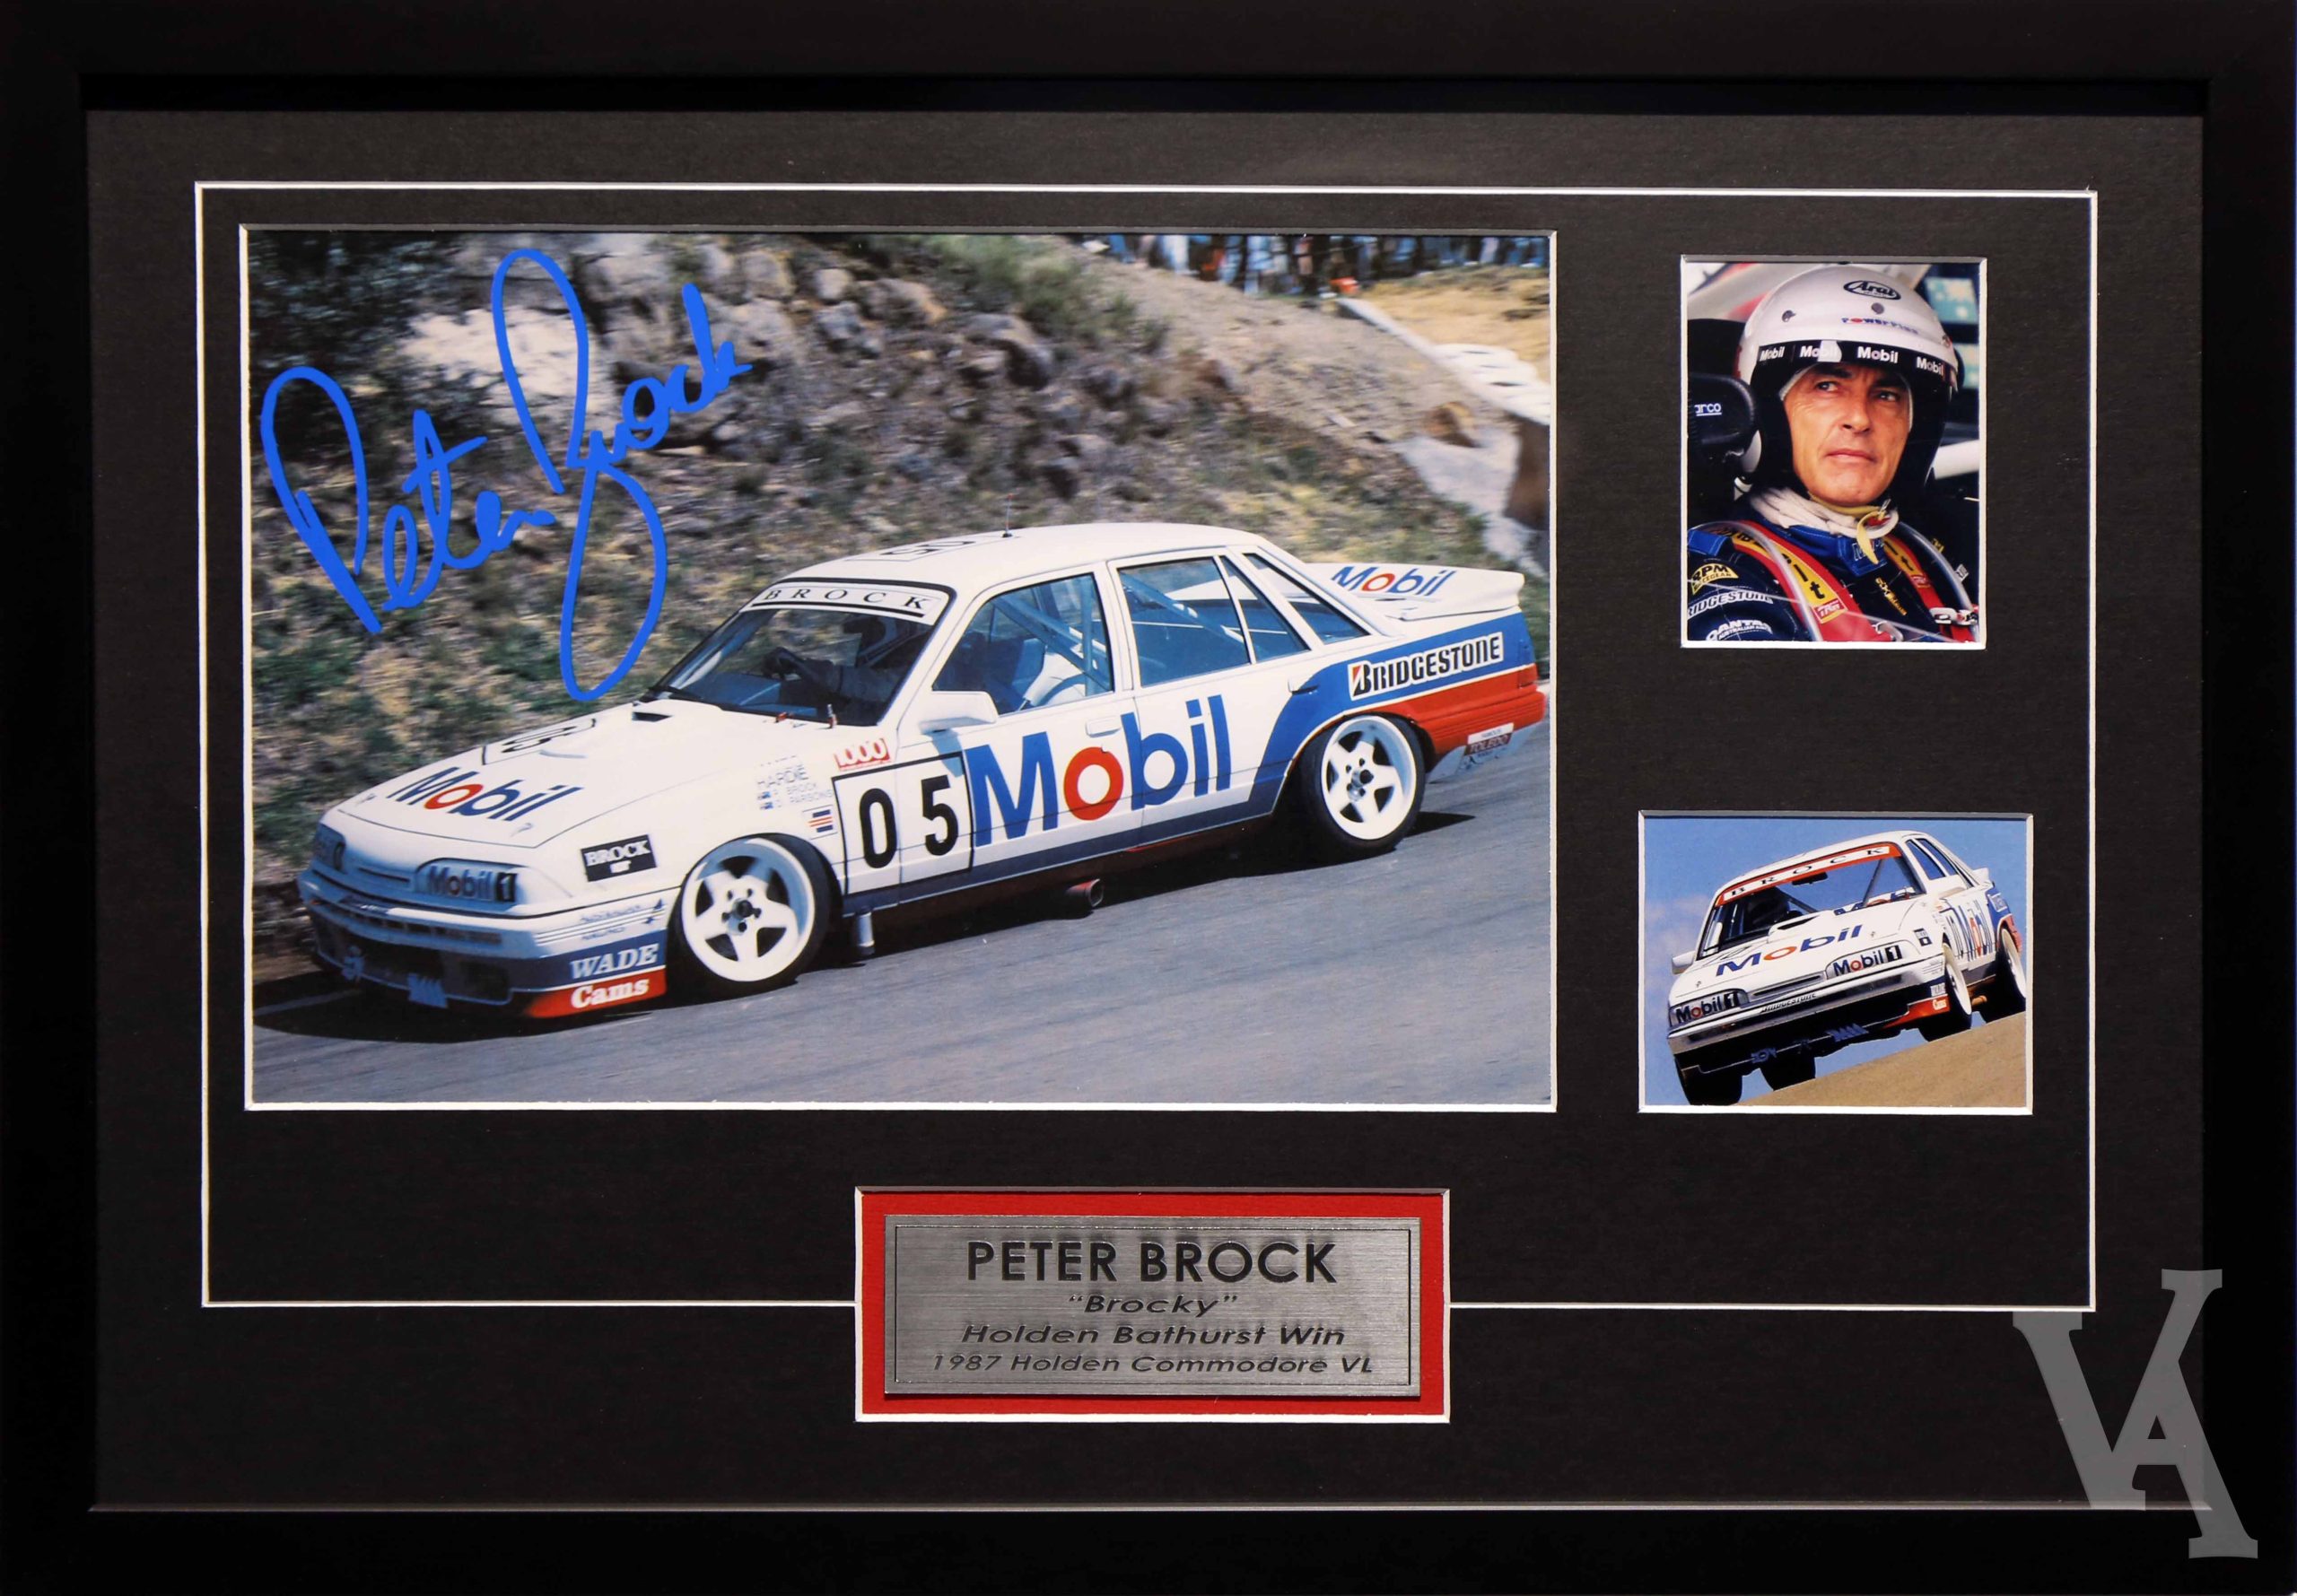 Peter Brock Signed & Framed Motor Racing Memorabilia. Bathurst 1987 Holden VL Commodore Winner.